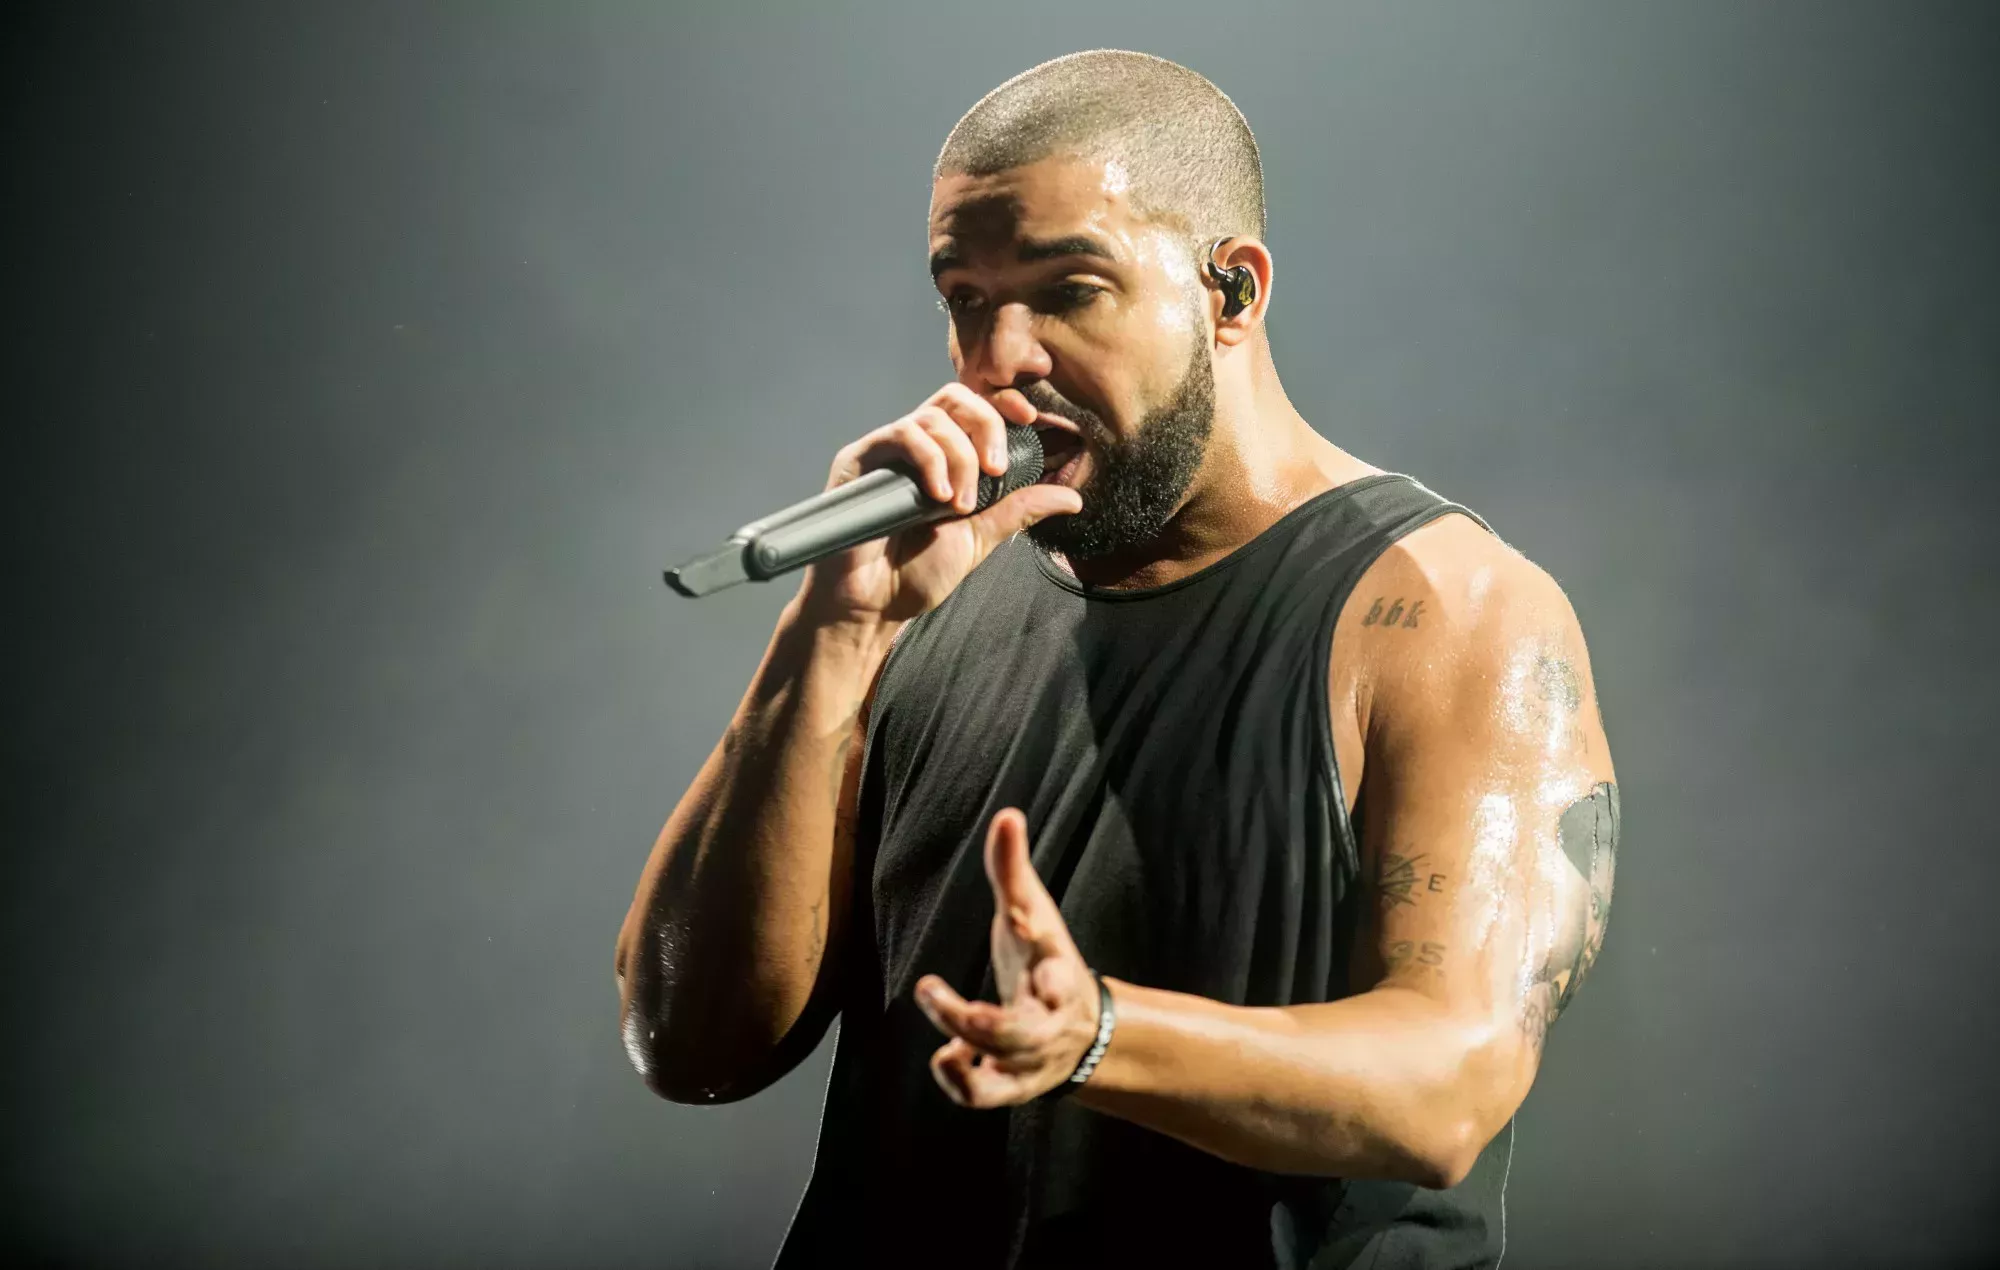 Los fans critican a Drake por su breve actuación en Lollapalooza y la cancelación de la retransmisión en directo